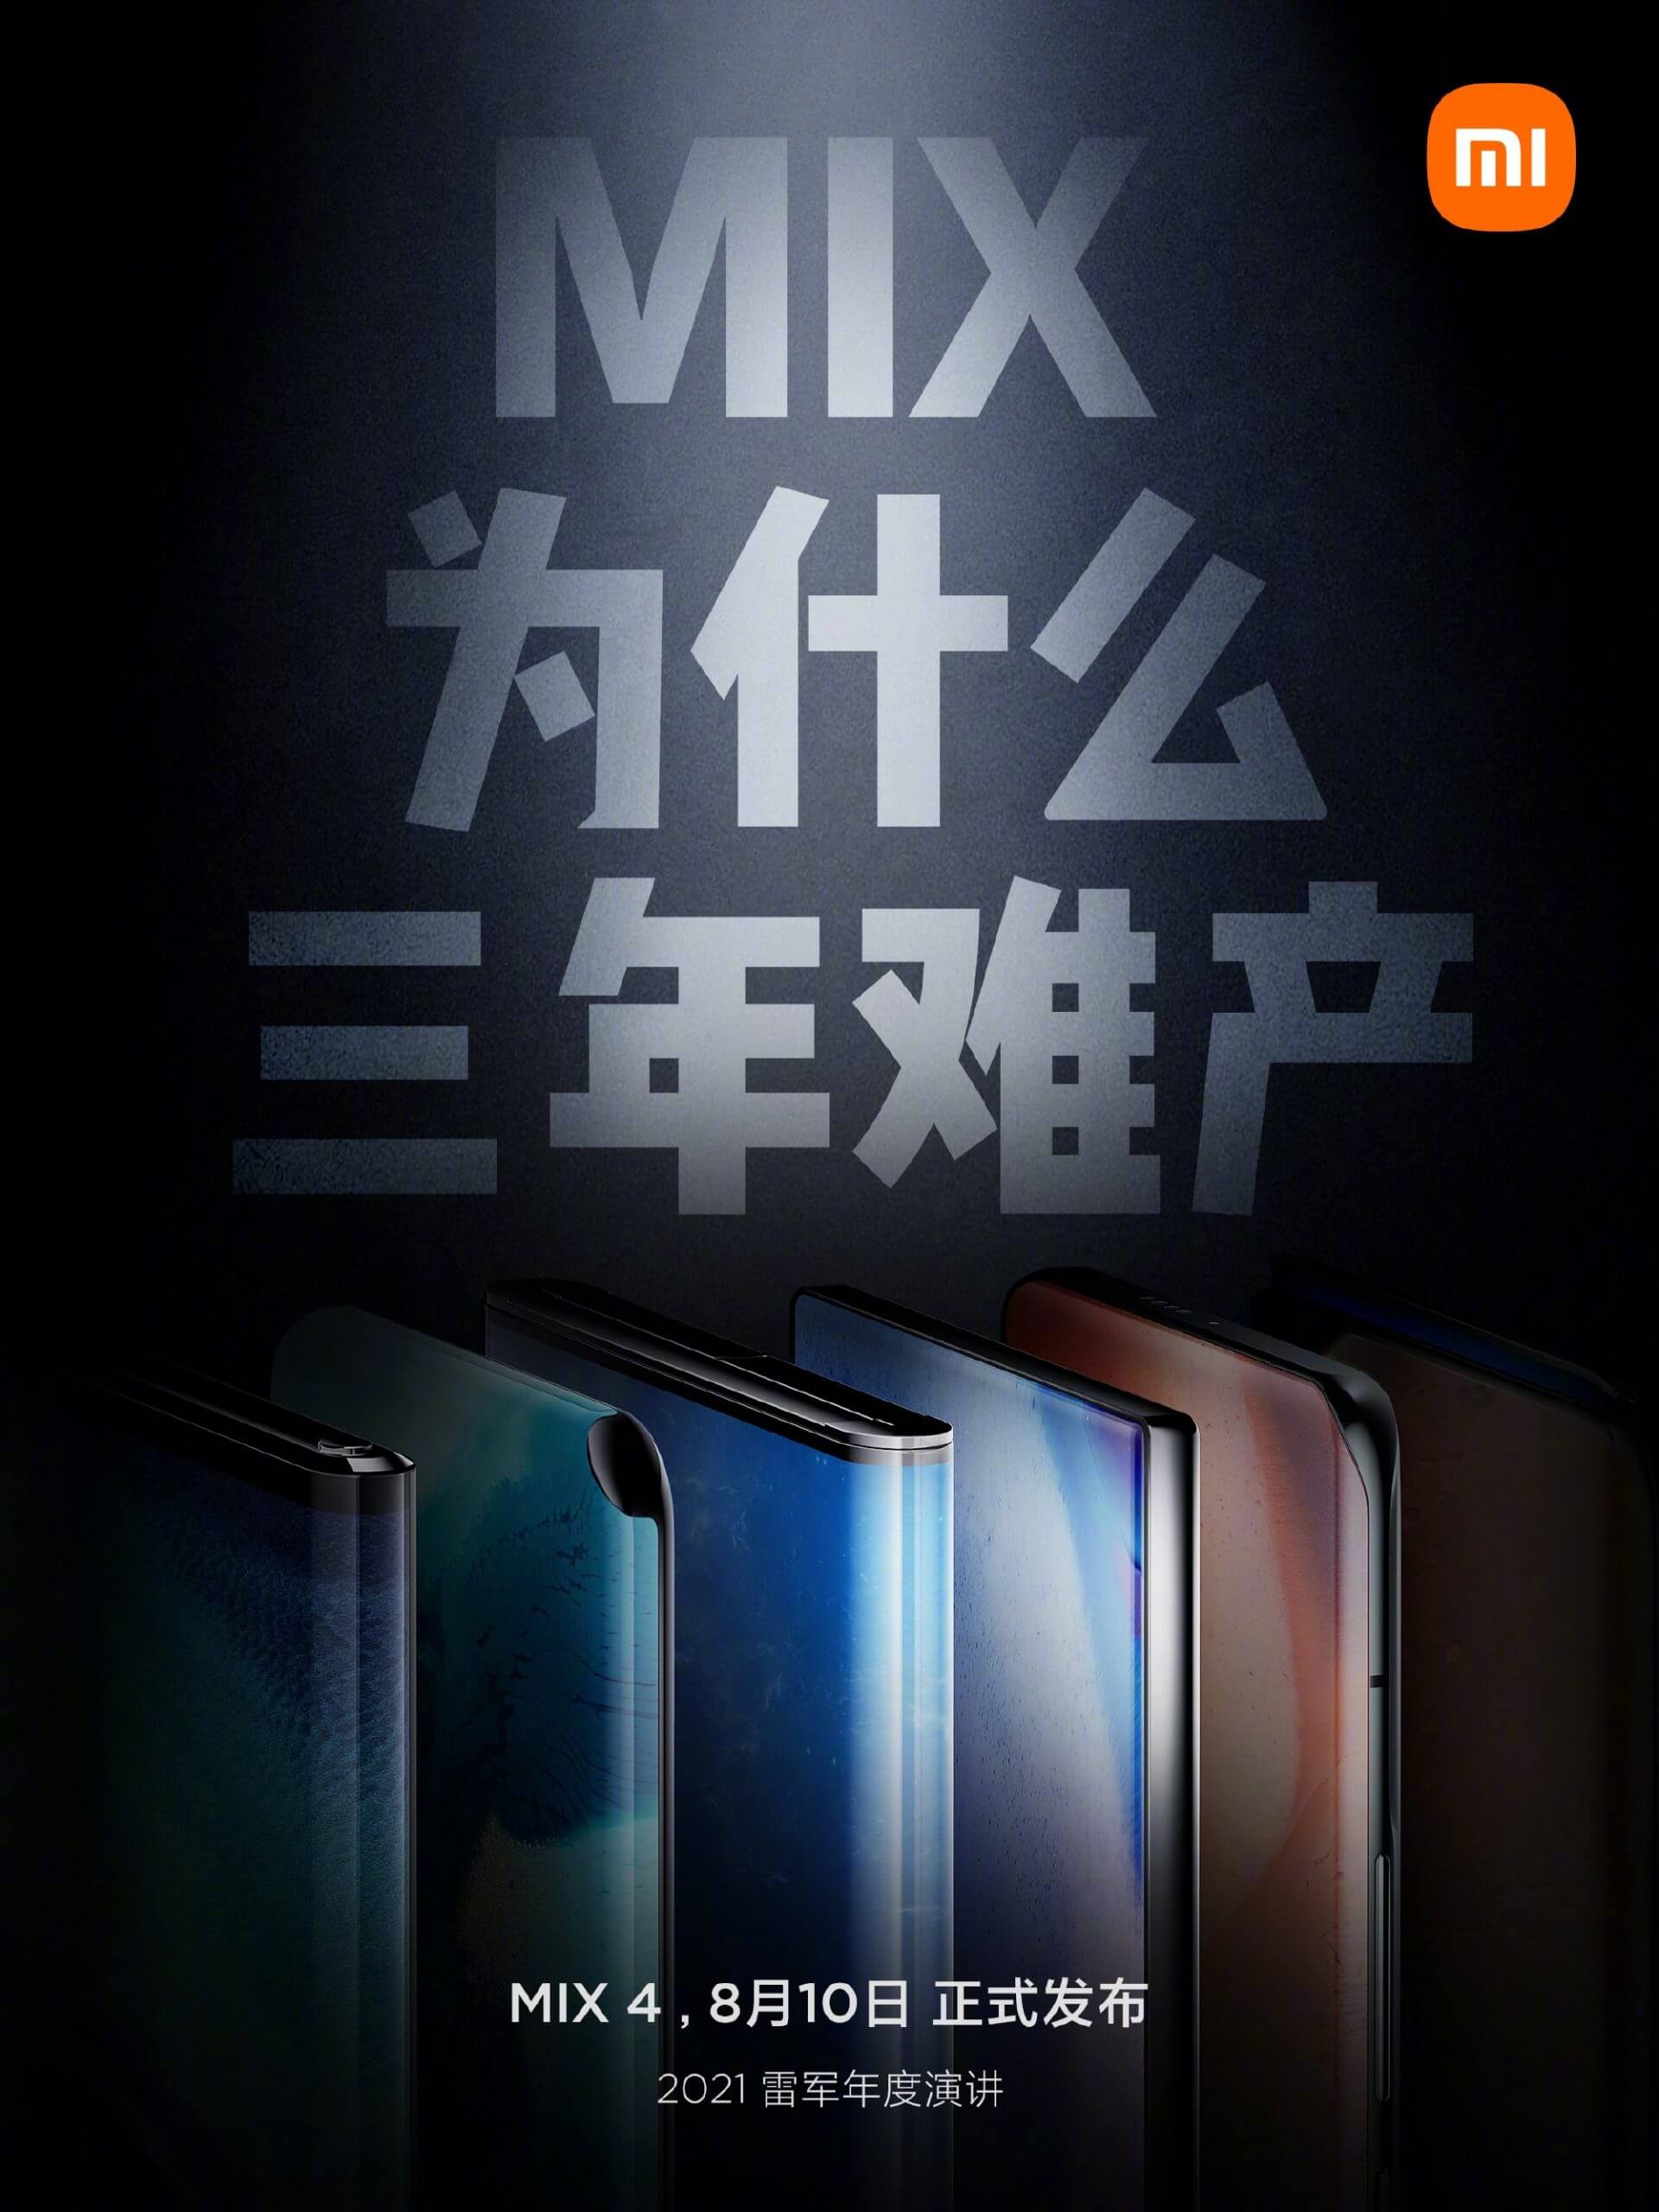 گوشی شیائومی MI MIX 4 قطعاً از Snapdragon 888 Plus استفاده میکند